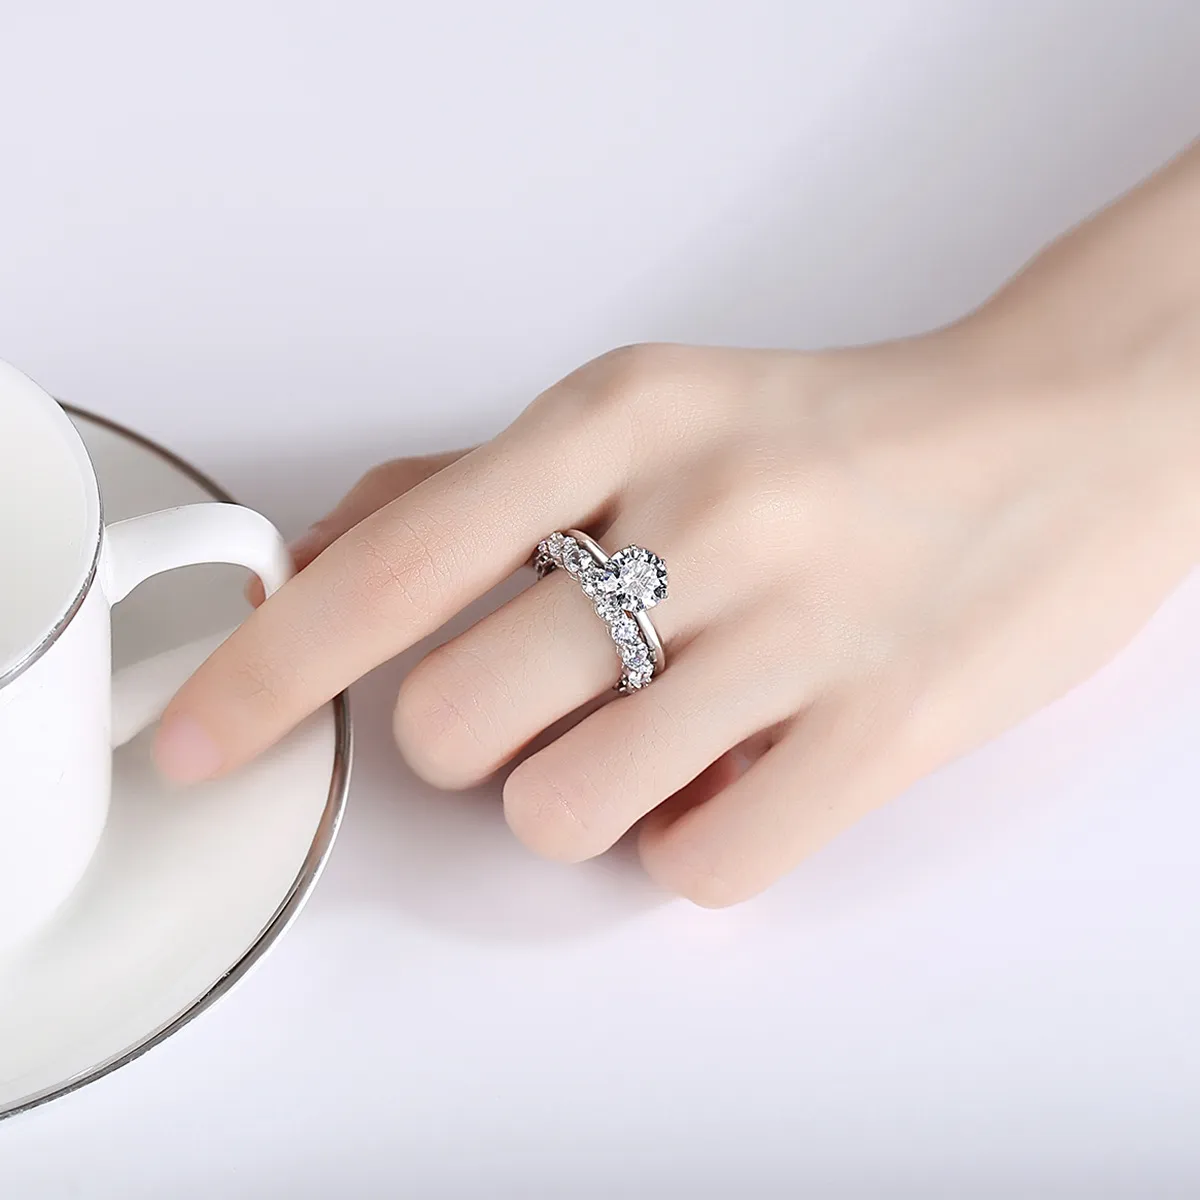 Europejski nowy luksus Moissanite Full Diamond S925 Srebrny pierścionek Biżuteria Charm Wysokiej klasy marki Pierścień na wesele kobiet, bankiet, imprezę, walentynkowe prezenty SPC